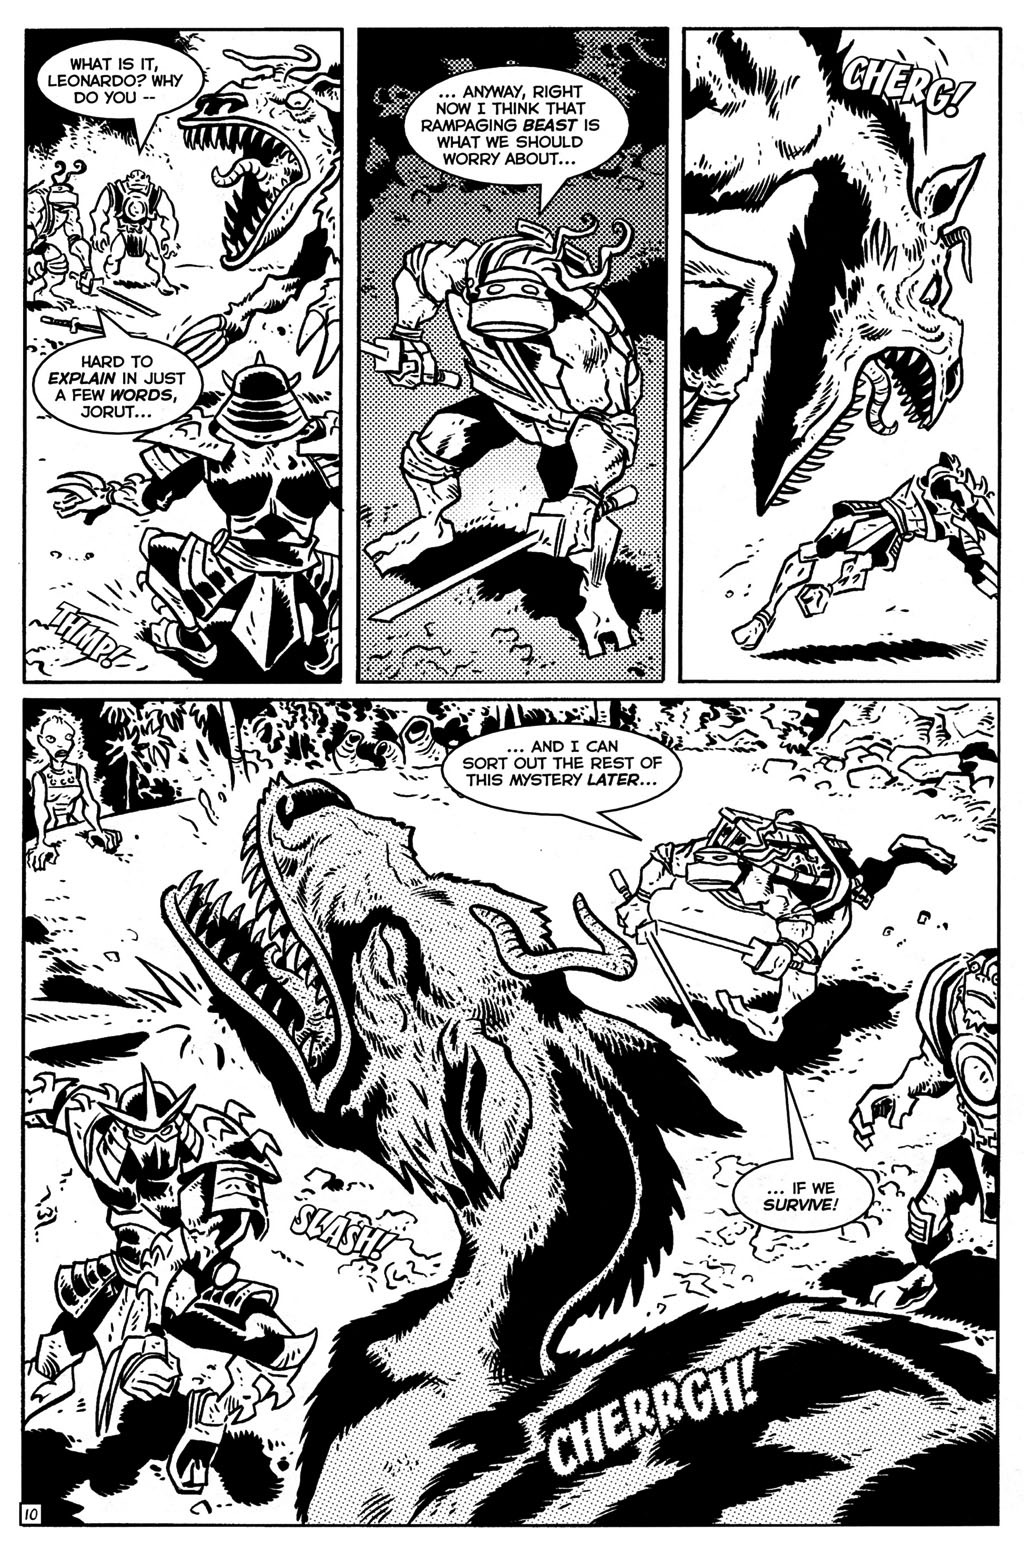 TMNT: Teenage Mutant Ninja Turtles issue 28 - Page 11